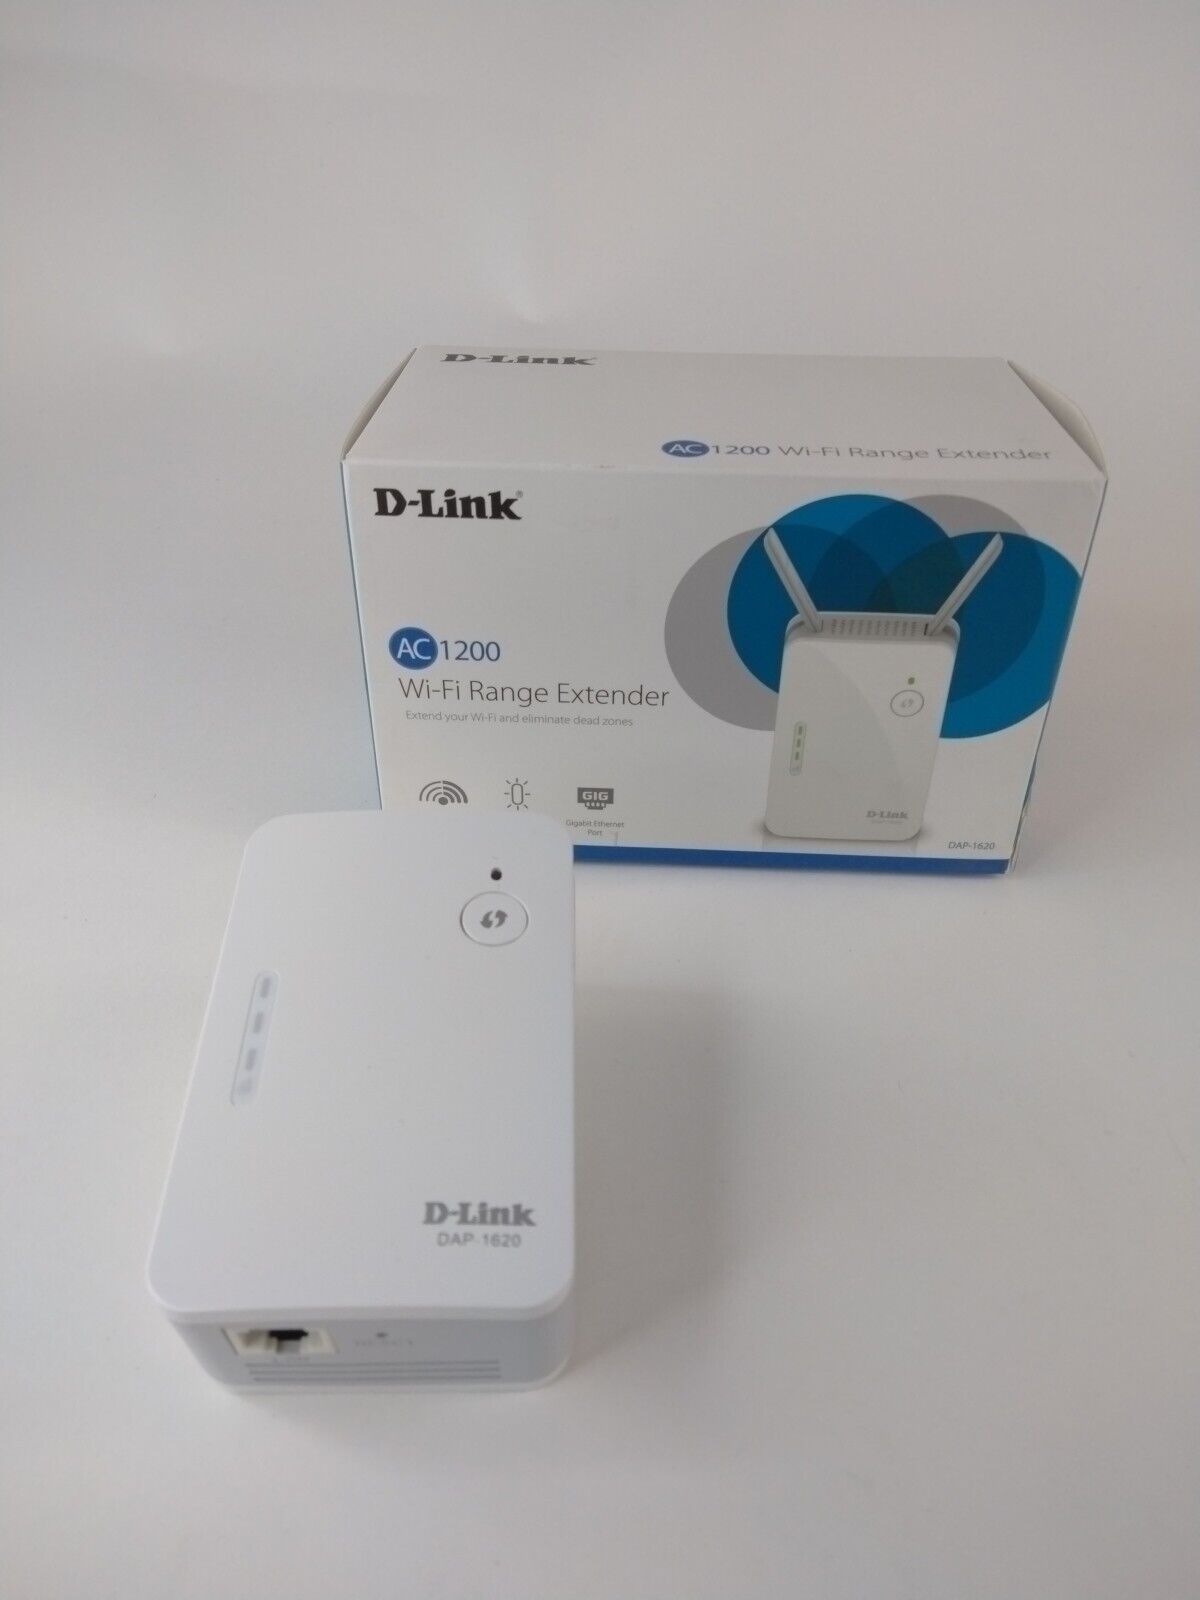 D-Link DAP-1620 AC 1200Mbps Wi-Fi Range Extender 802.11 ac/g/n/a 2.4G & 5GHz